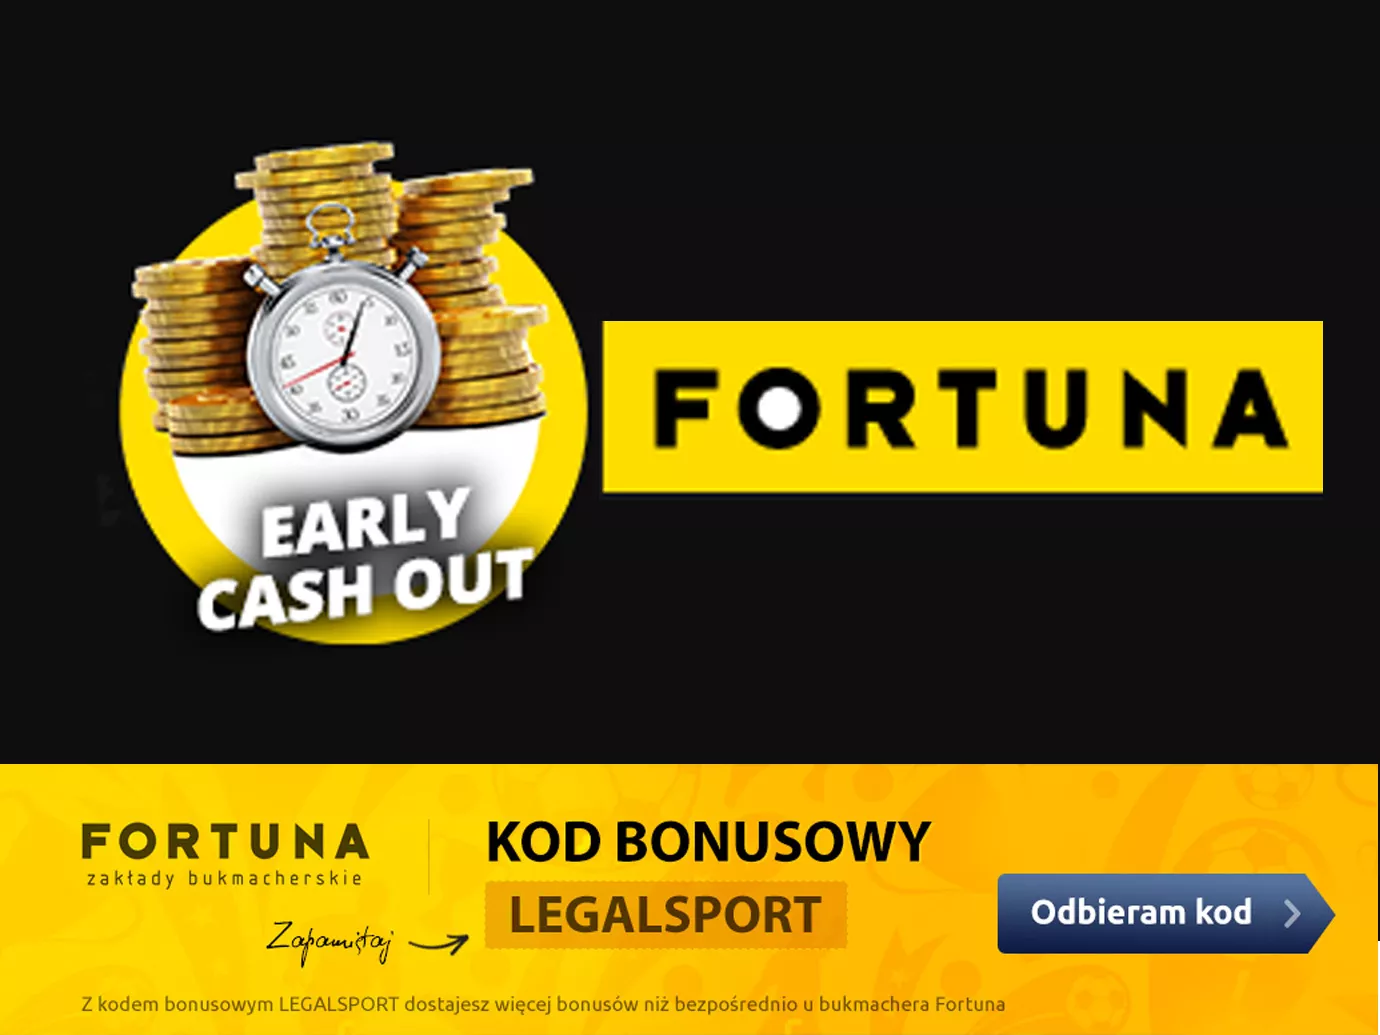 Early cashout Fortuna - możliwość wcześniejszego rozliczenia kuponu internetowego